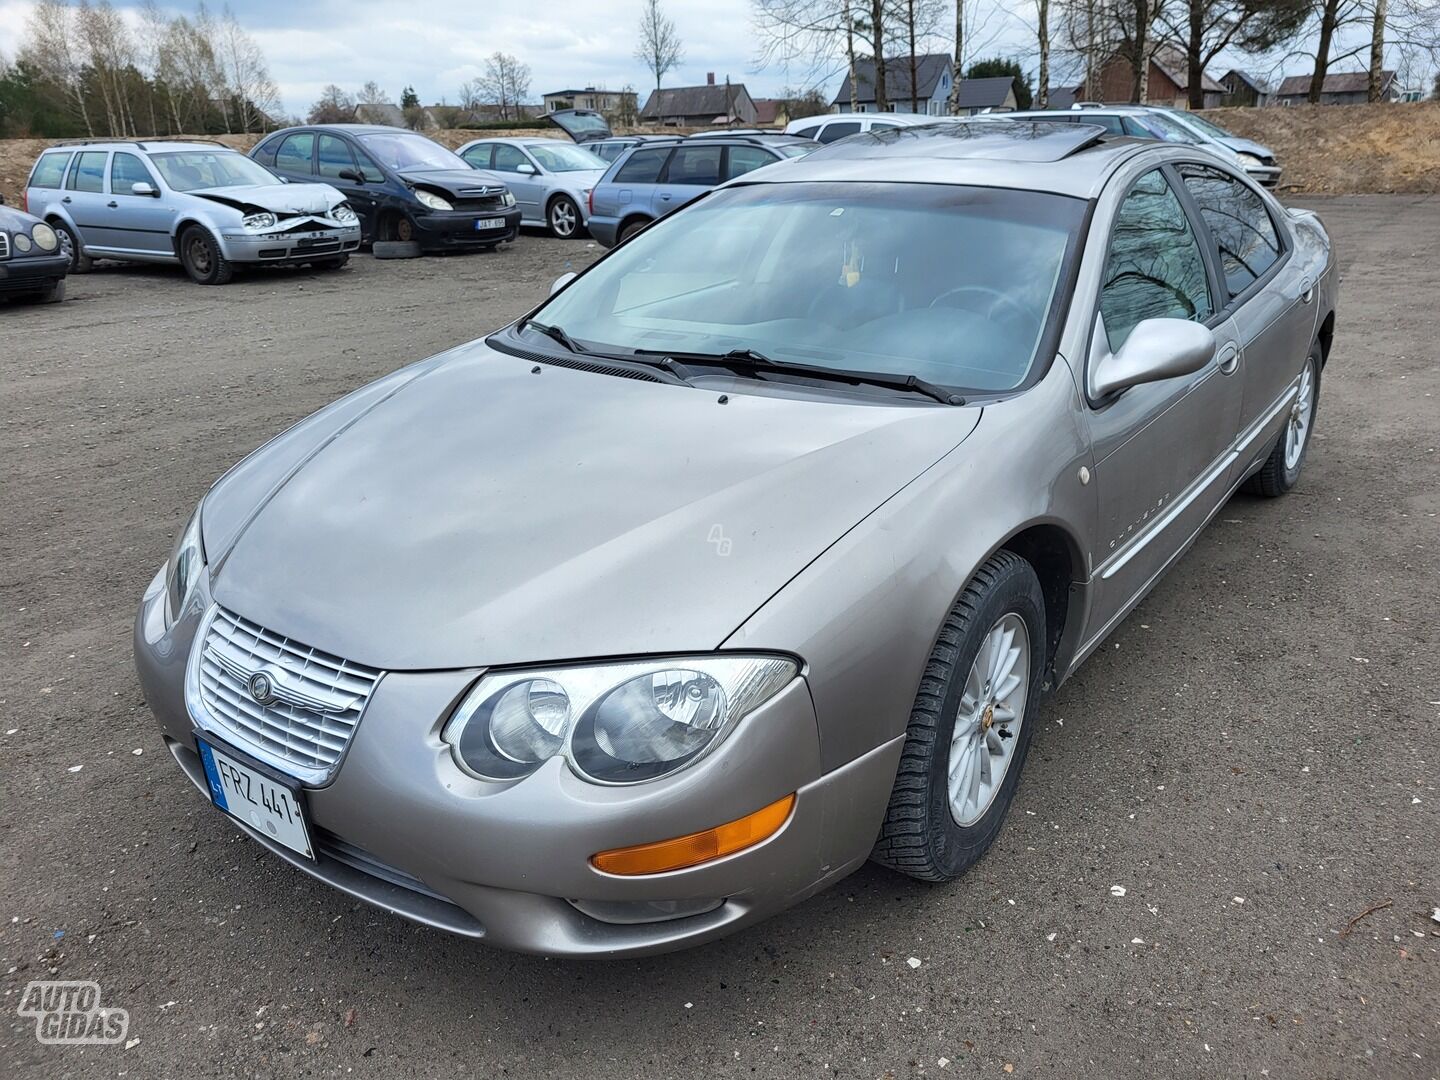 Chrysler 300M 2001 г запчясти